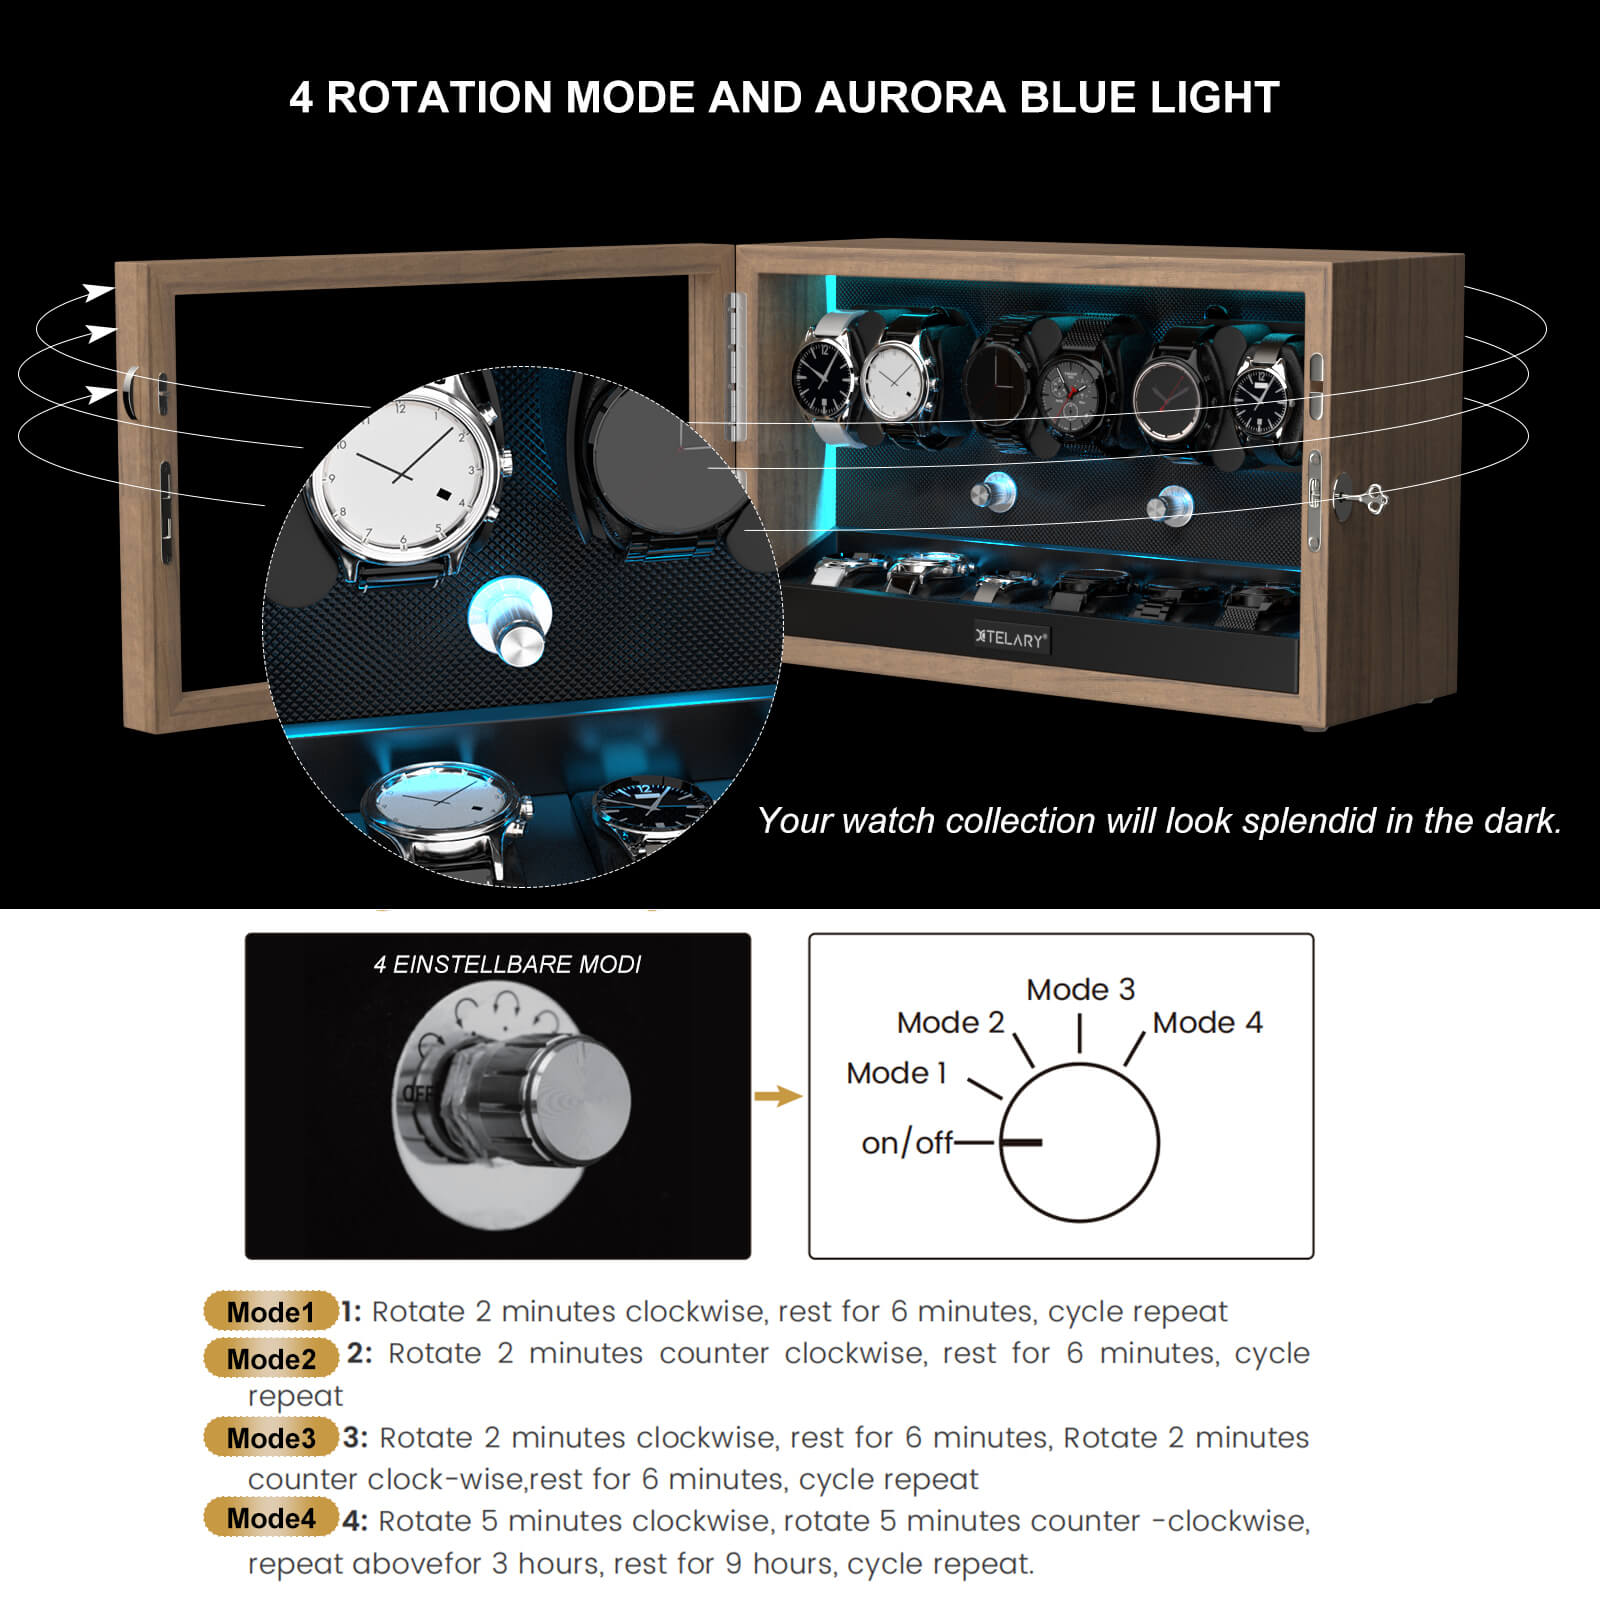 6 Uhrenbeweger für Automatikuhren mit 6 zusätzlichen Staufächern, Aurora-Blau-LED-Licht – Maserung